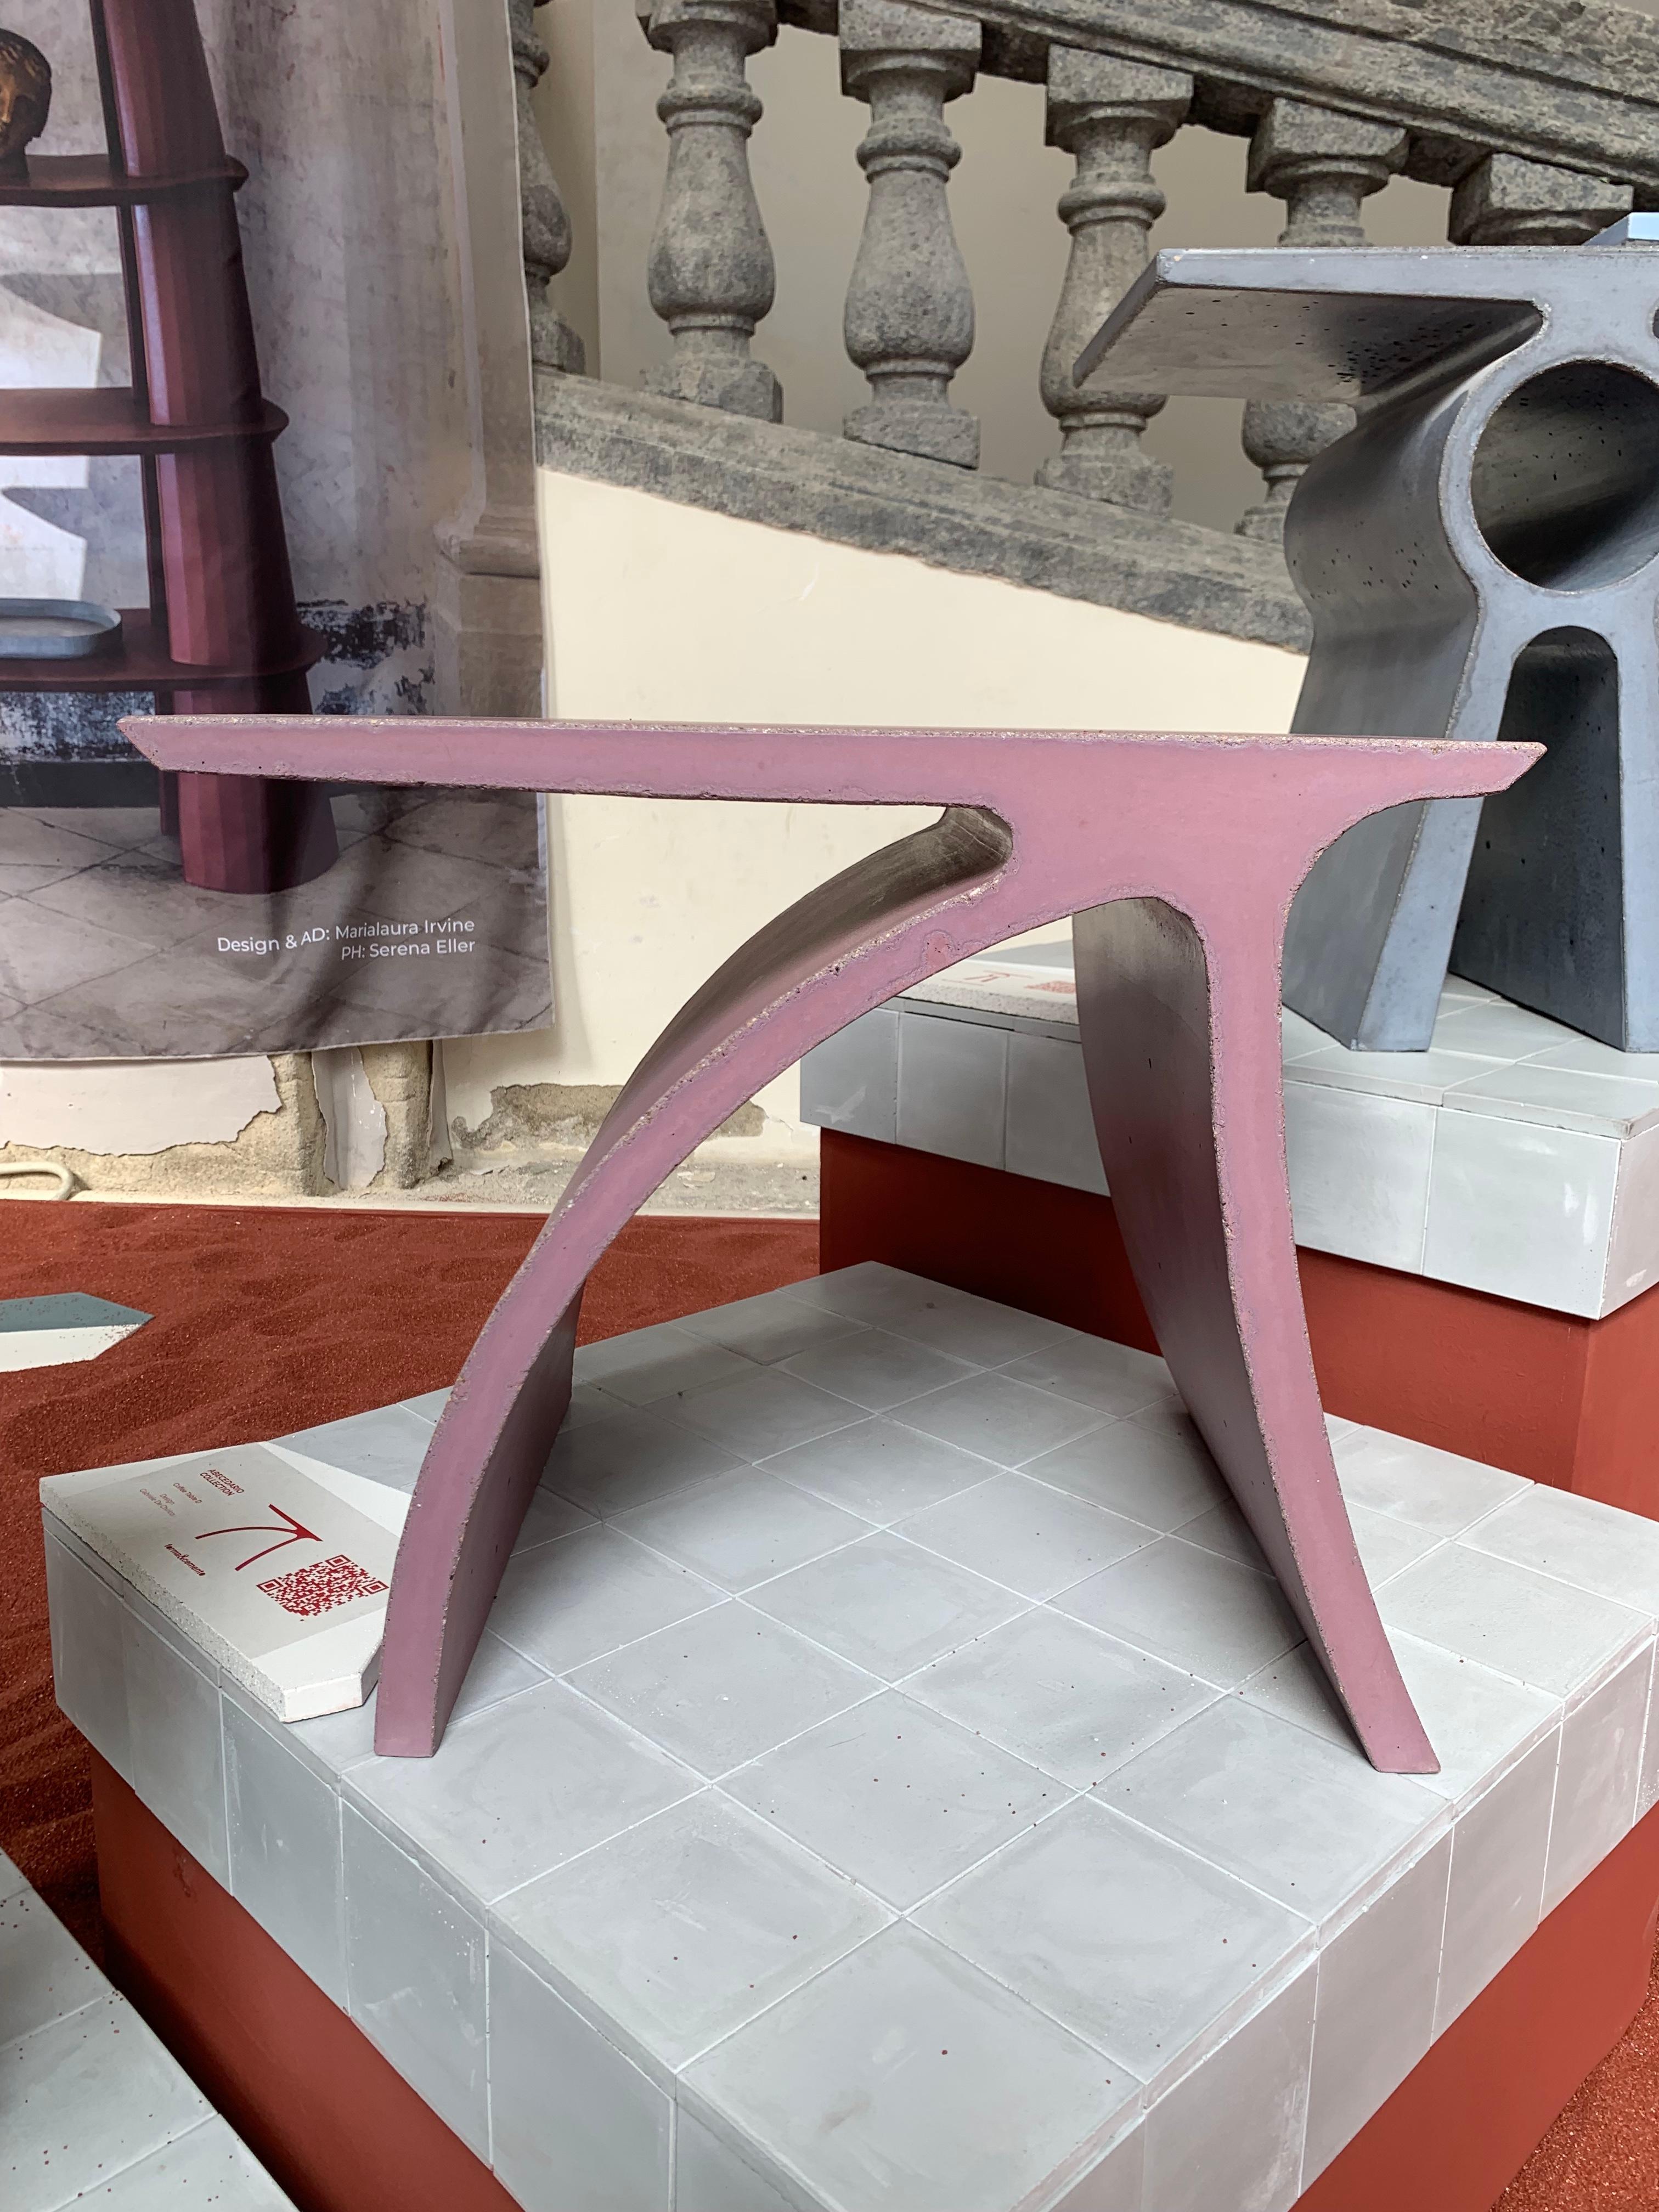 La table basse D fait partie de la Collection Abecedario ; elle marque le début d'un langage en ciment qui créera un alphabet en béton composé de tables et de tabourets coulés par une coulée de béton à l'intérieur d'un moule extrudé. 
Les produits